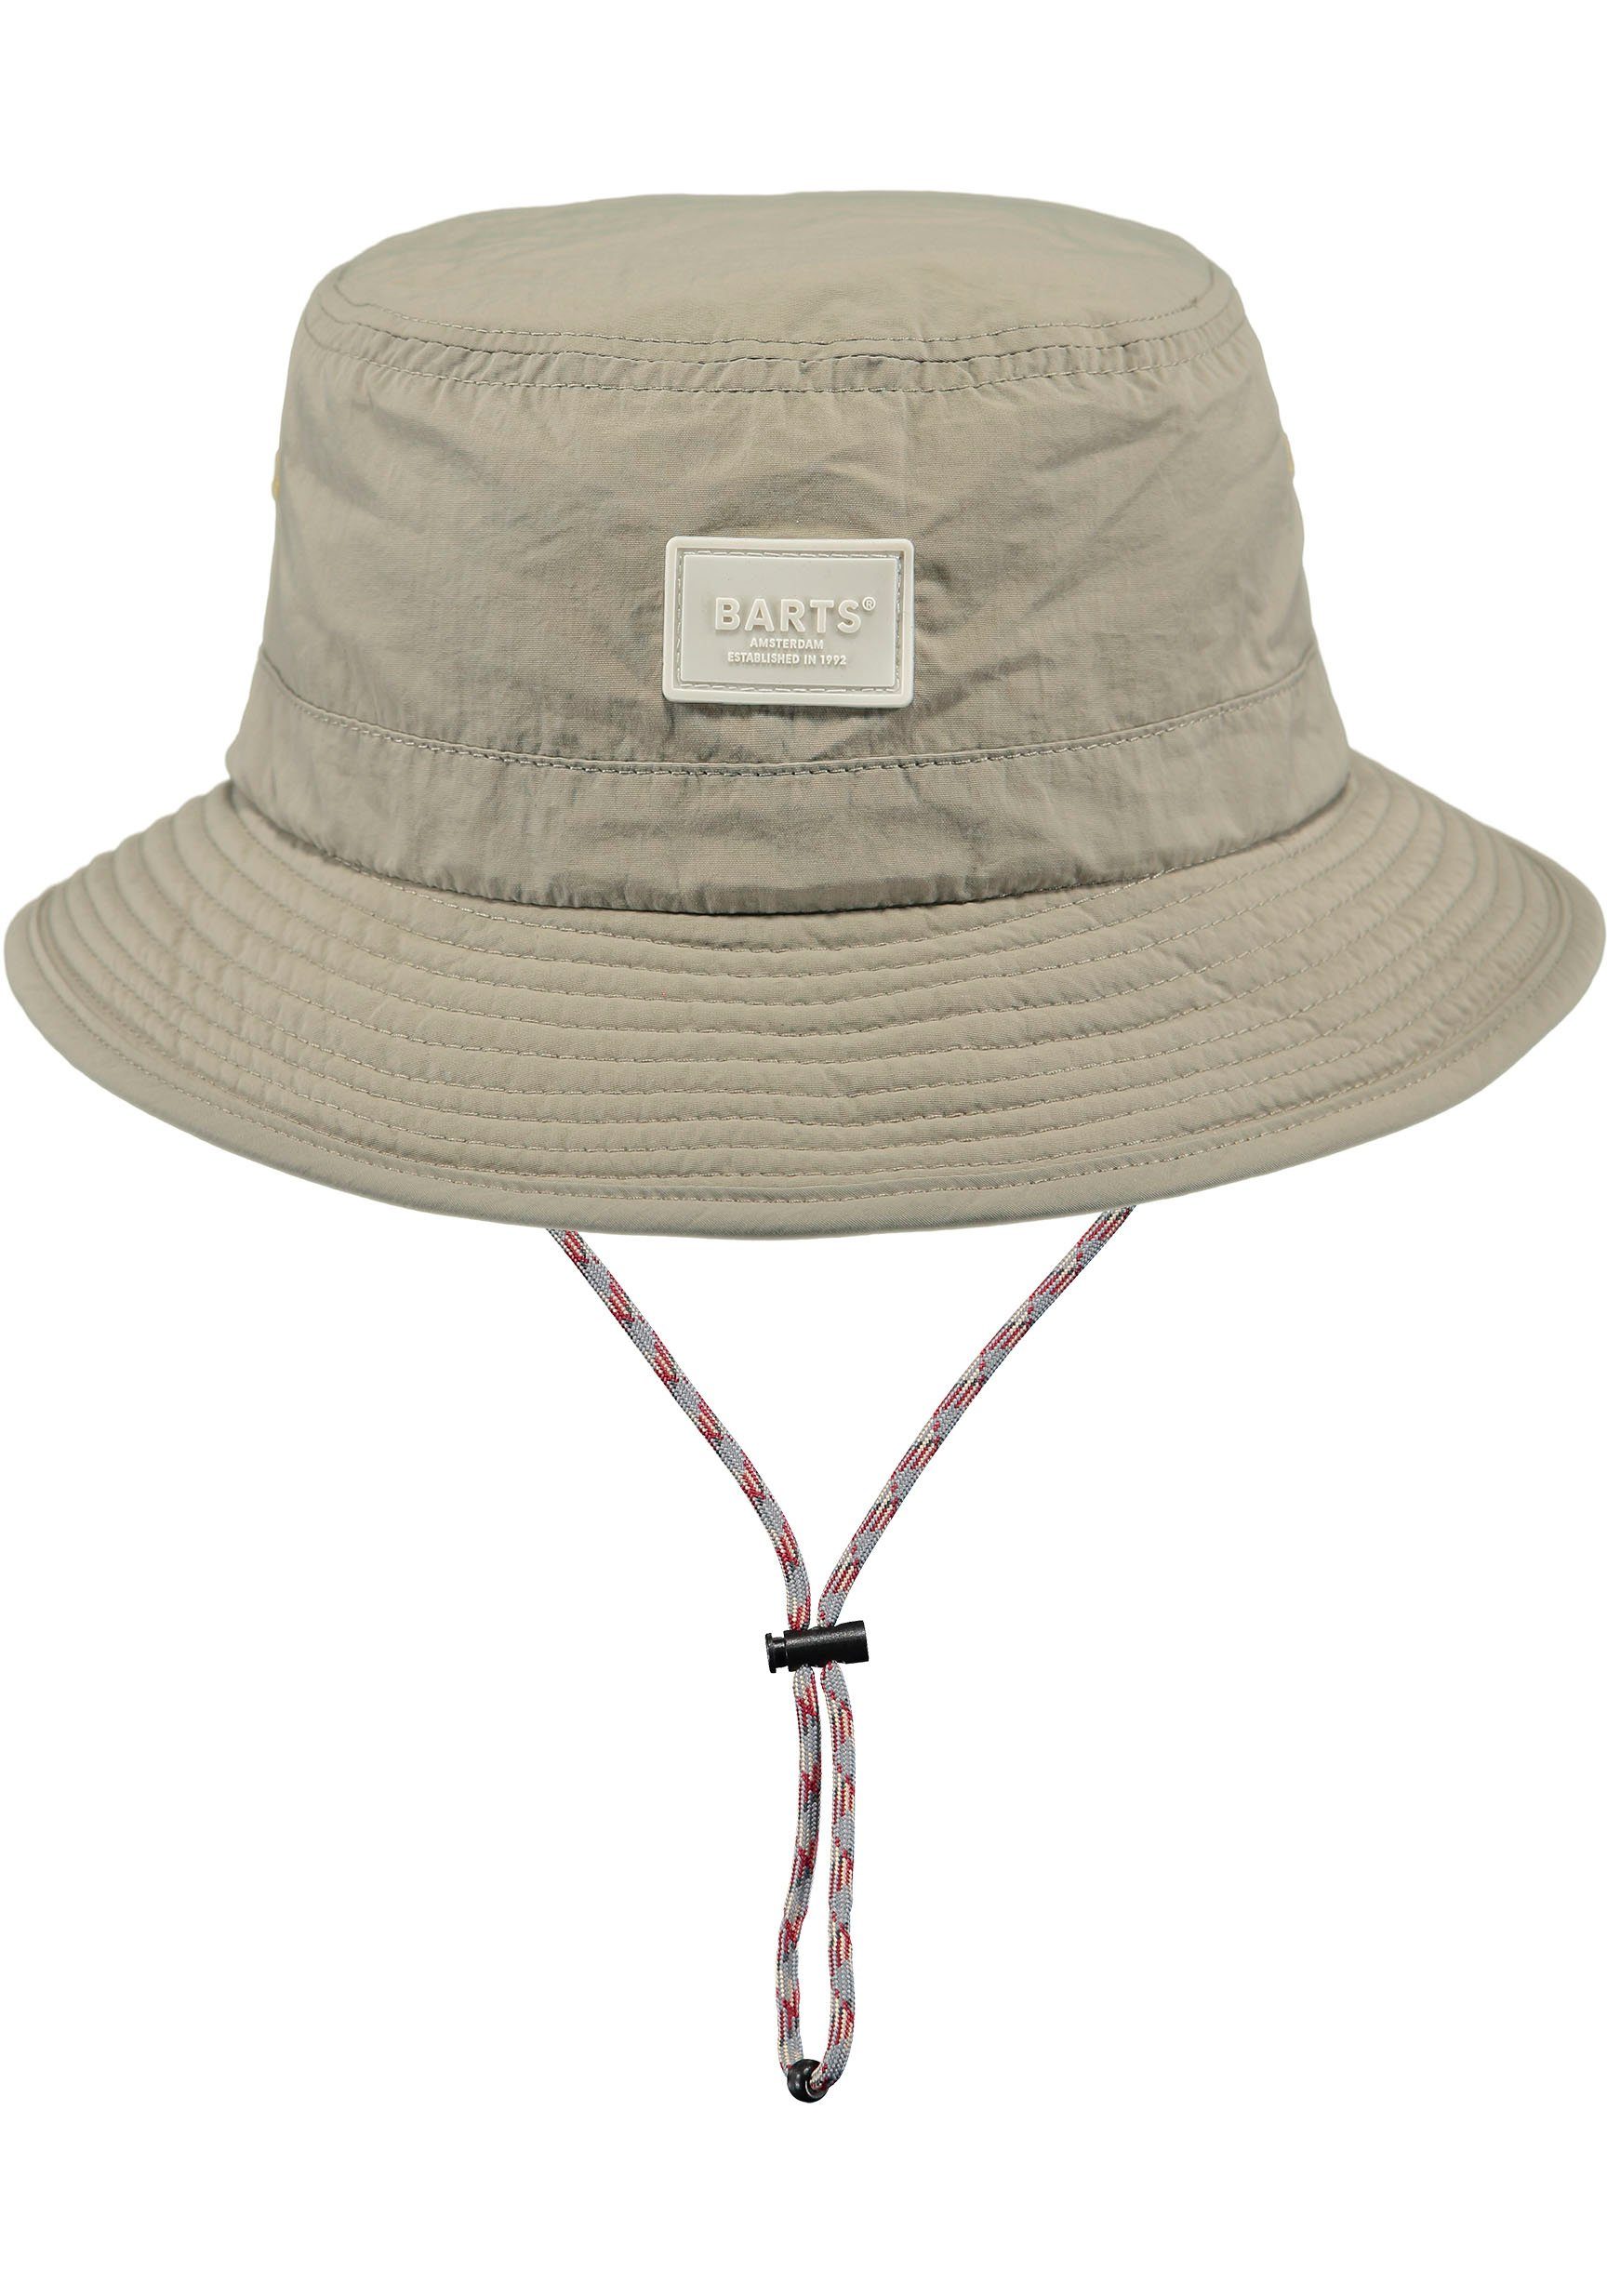 Barts Fischerhut mit Bindeband, verstellbare innenliegendes natur durch Hutband Passform